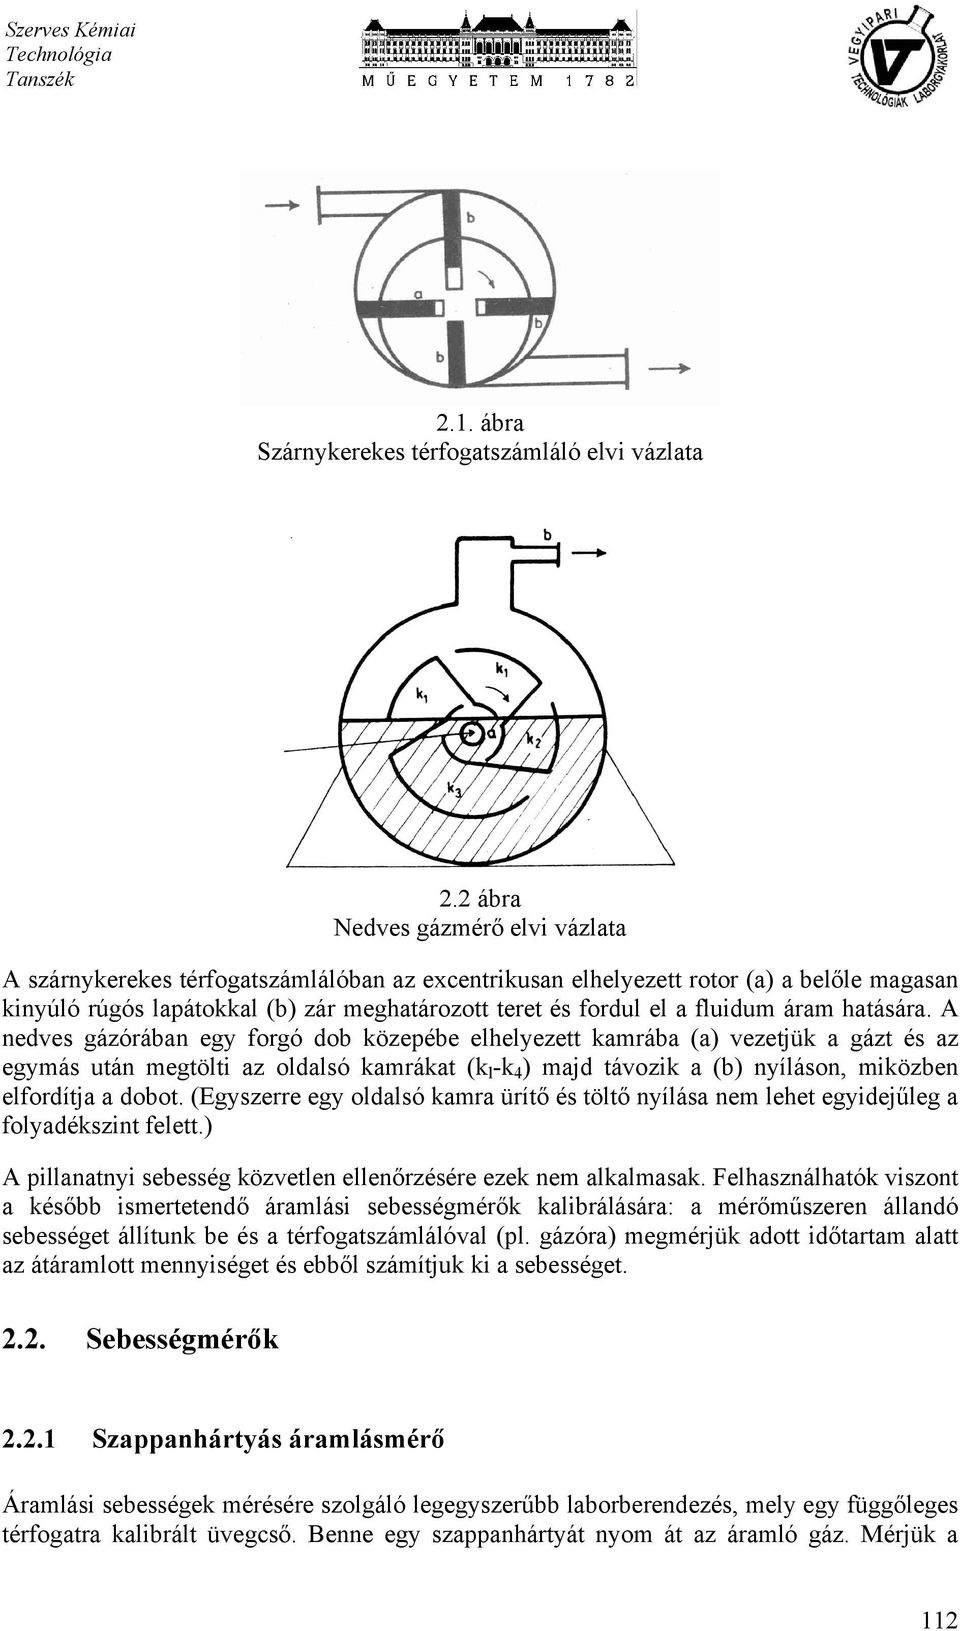 A Vegyipari Technológiák gyakorlatokhoz kapcsolódó általános ismeretek -  PDF Ingyenes letöltés